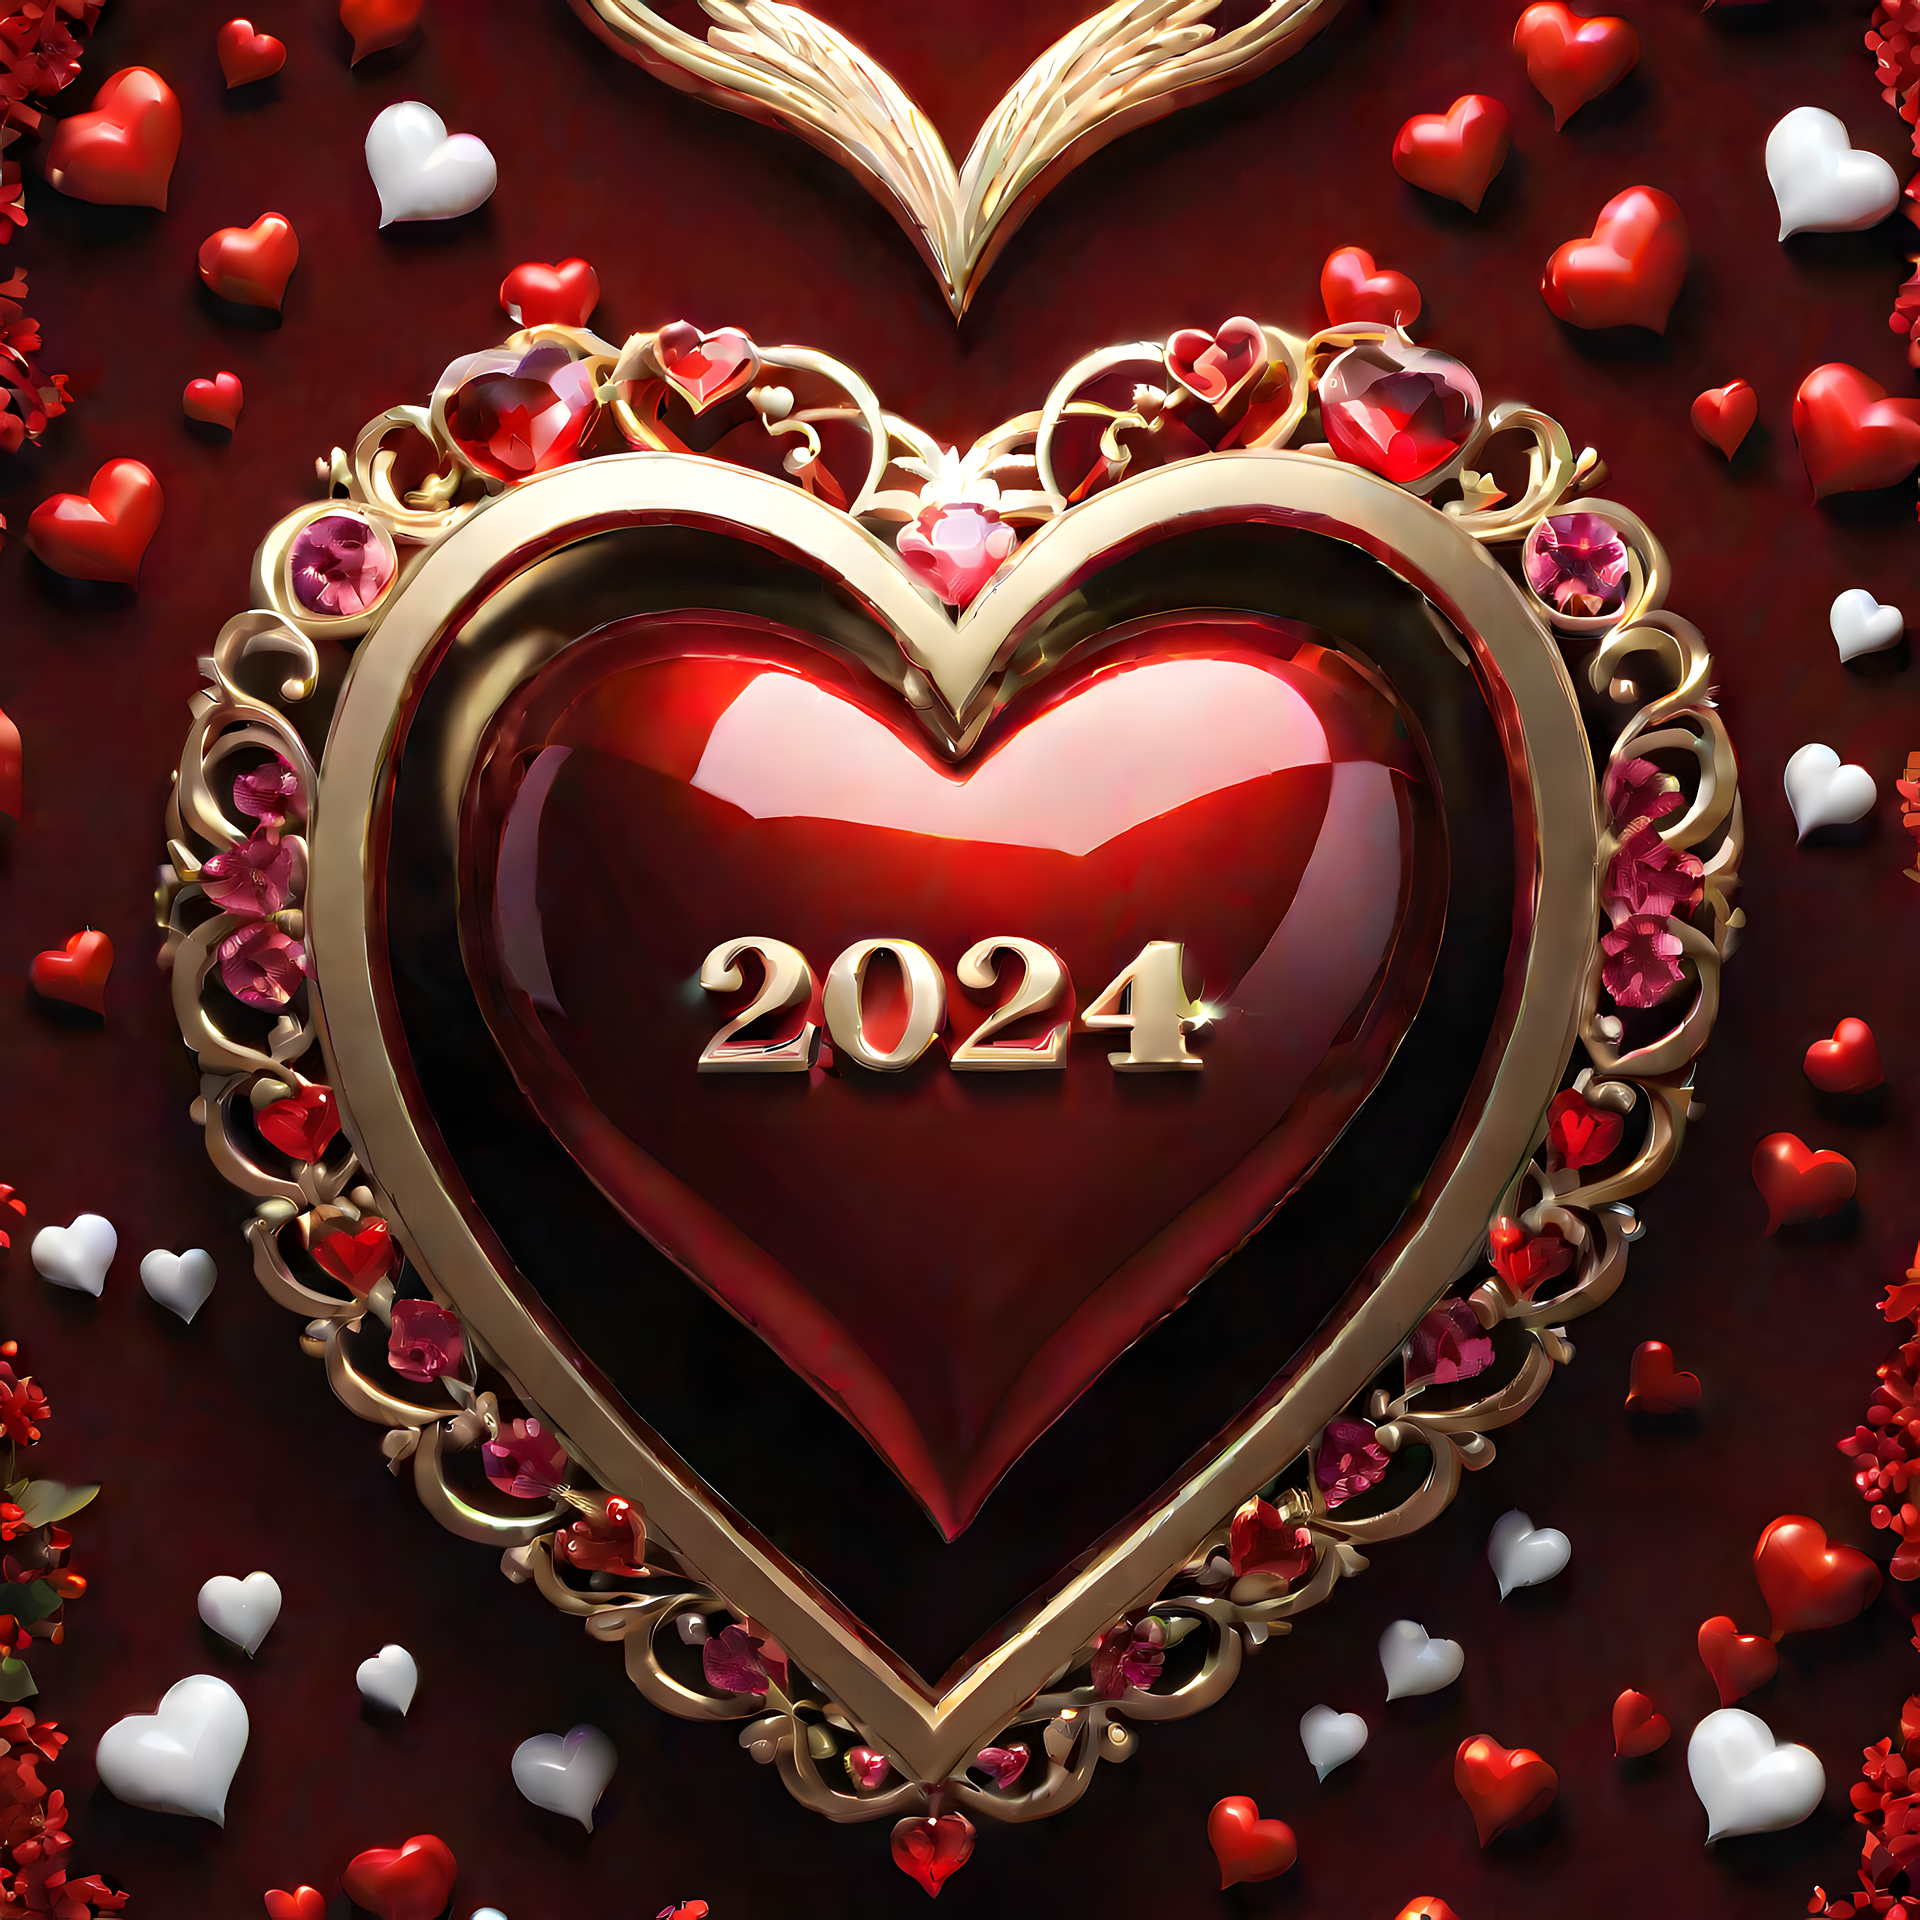 30 lời chúc Valentine 2024 lãng mạn, cảm động nhất dành cho đôi lứa - Ảnh 1.